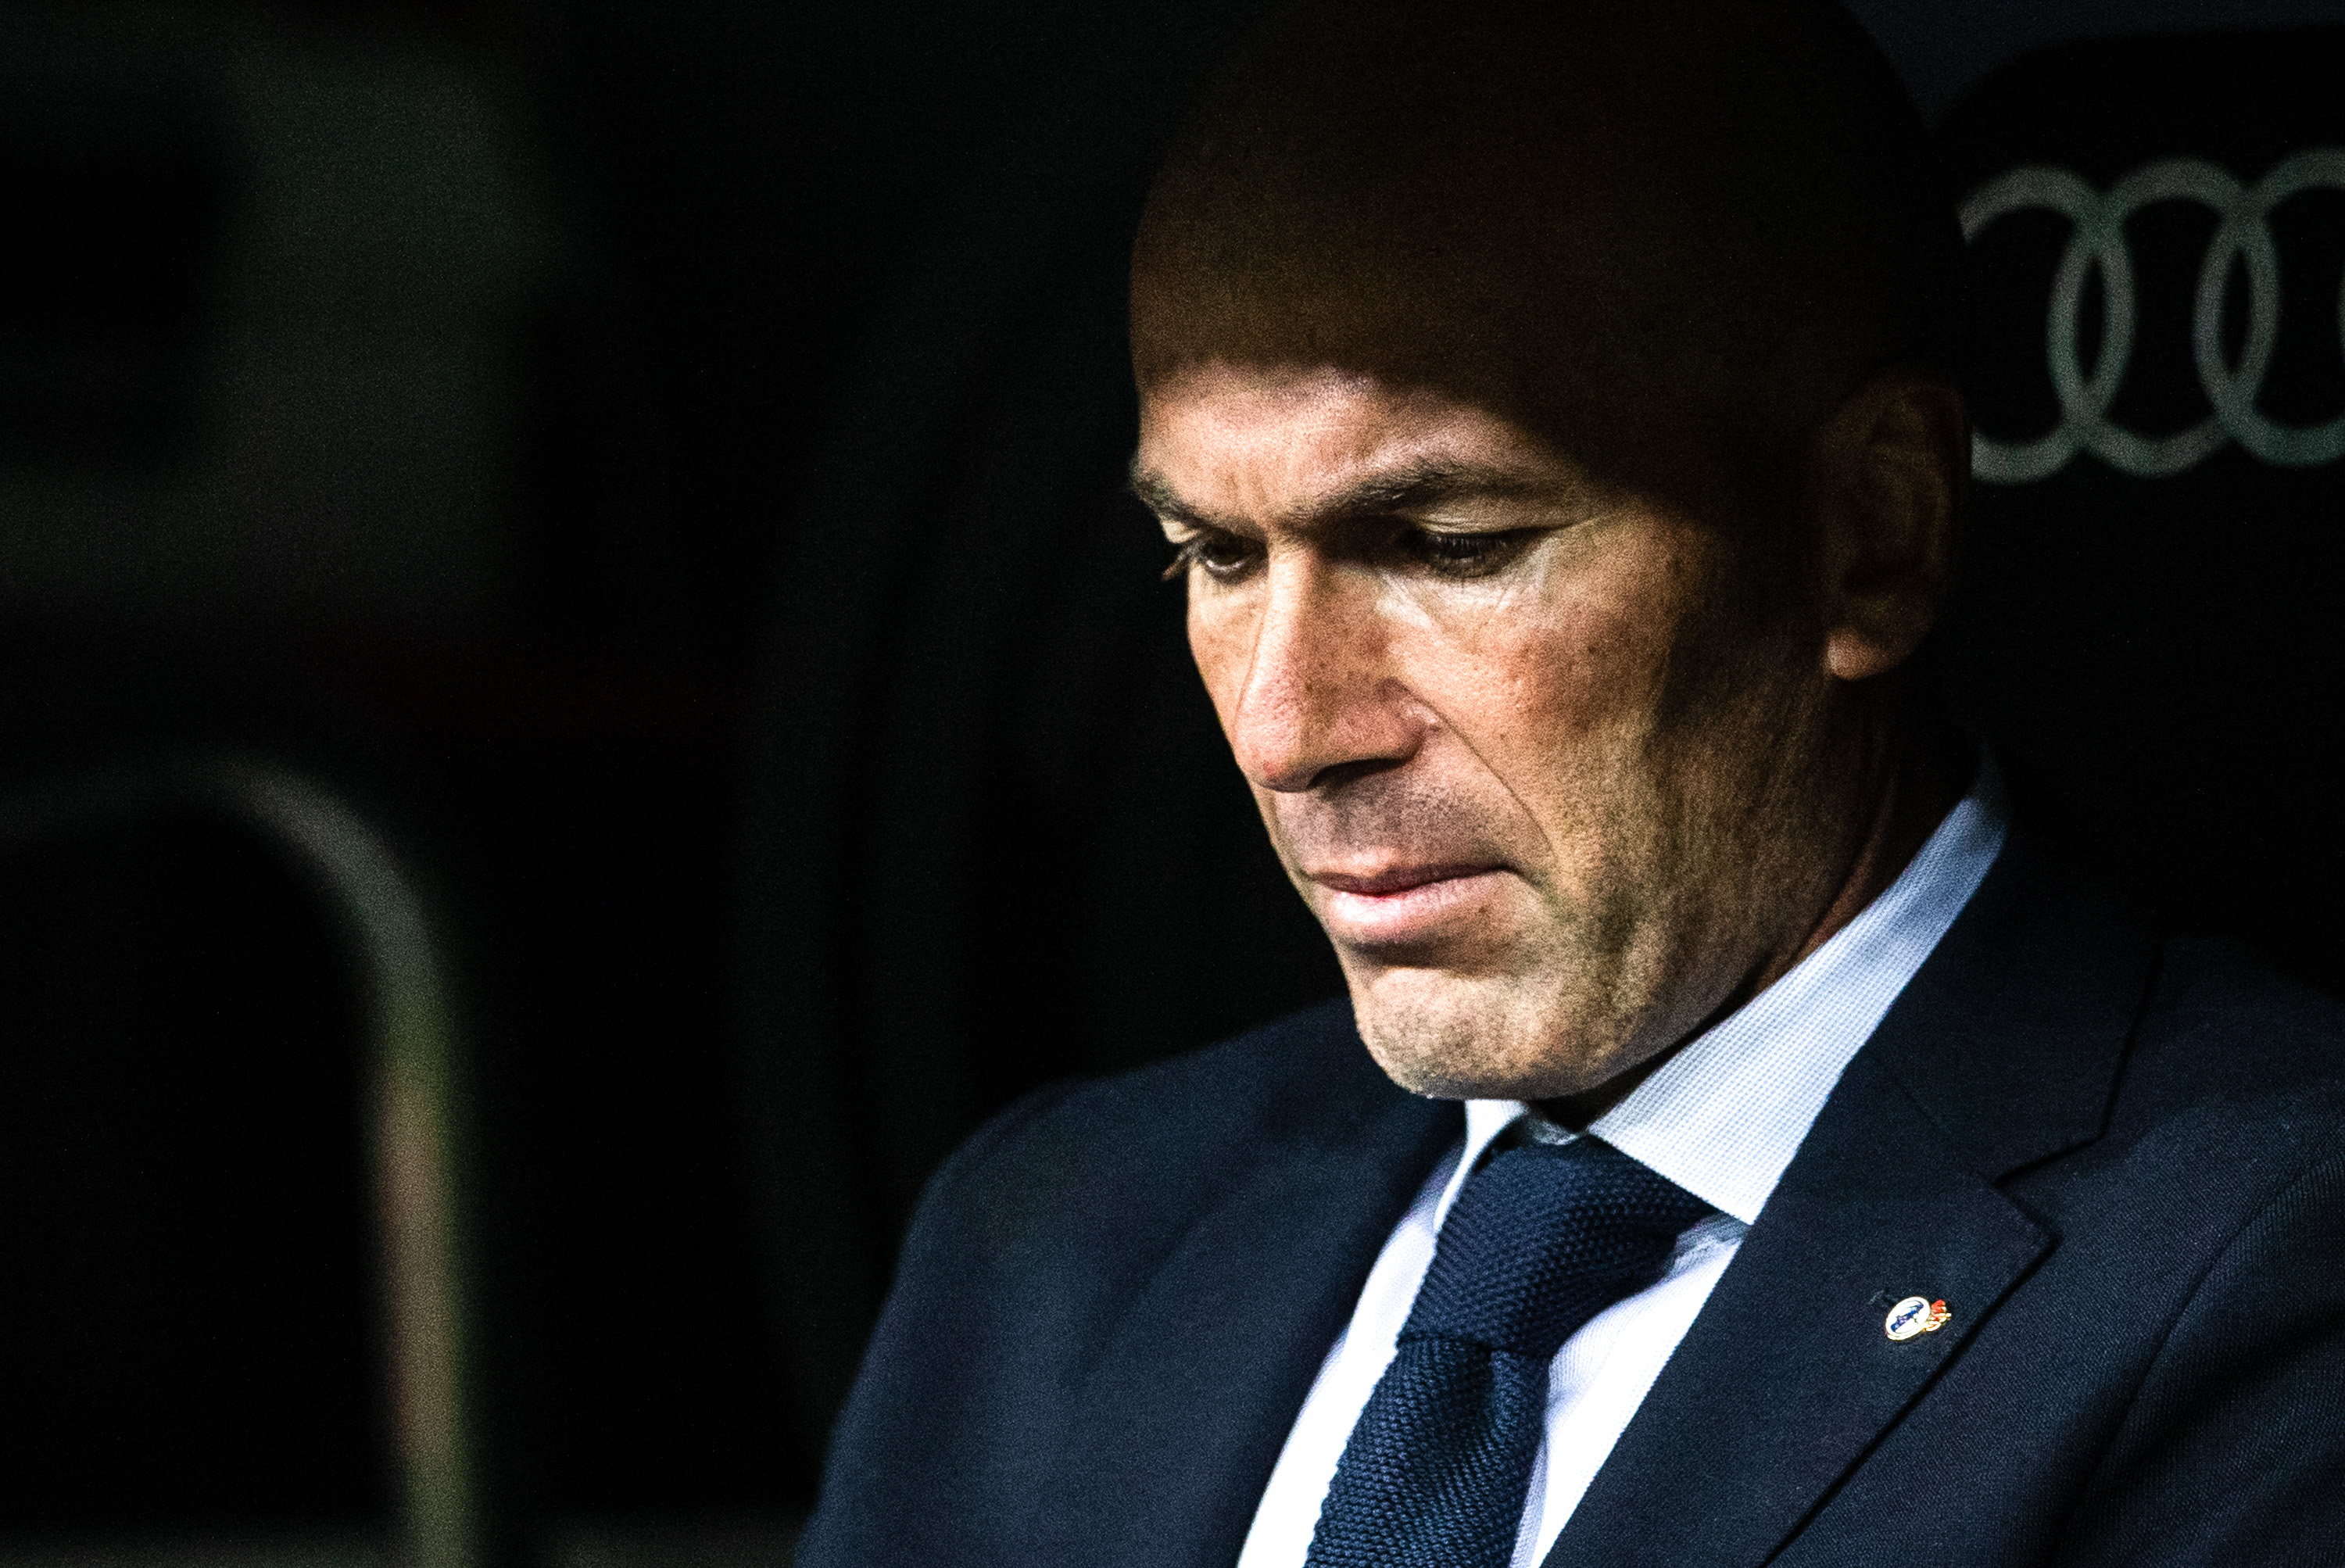 Défi pour 2020, Zidane veut remporter le seul titre qui manque à son palmarès